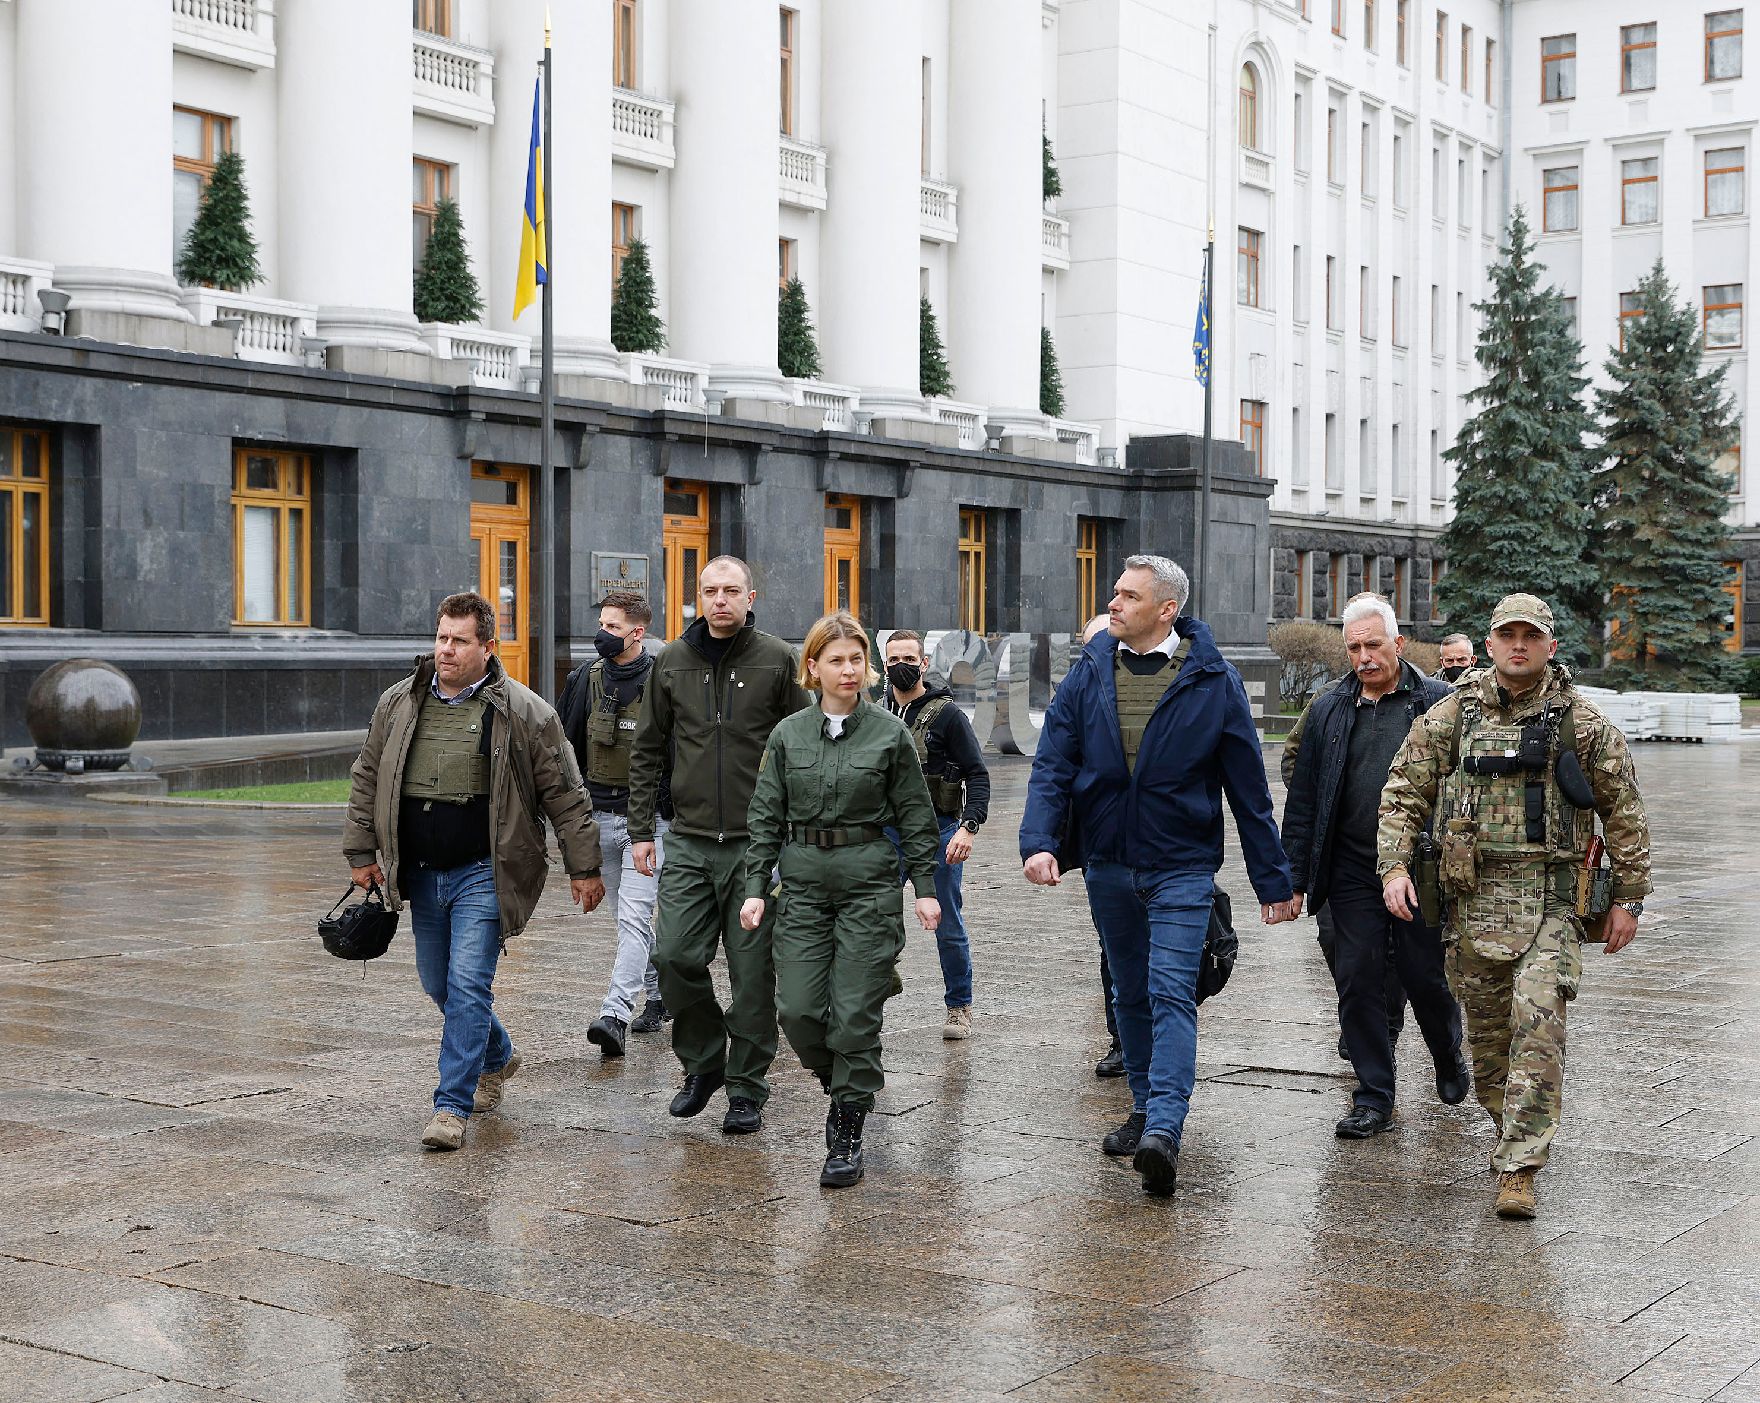 Am 9. April 2022 reiste Bundeskanzler Karl Nehammer zu einem Arbeitsbesuch nach Kiev. Im Bild mit am Weg zu dem ukrainischen Präsidenten Wolodymyr Selenskyj.